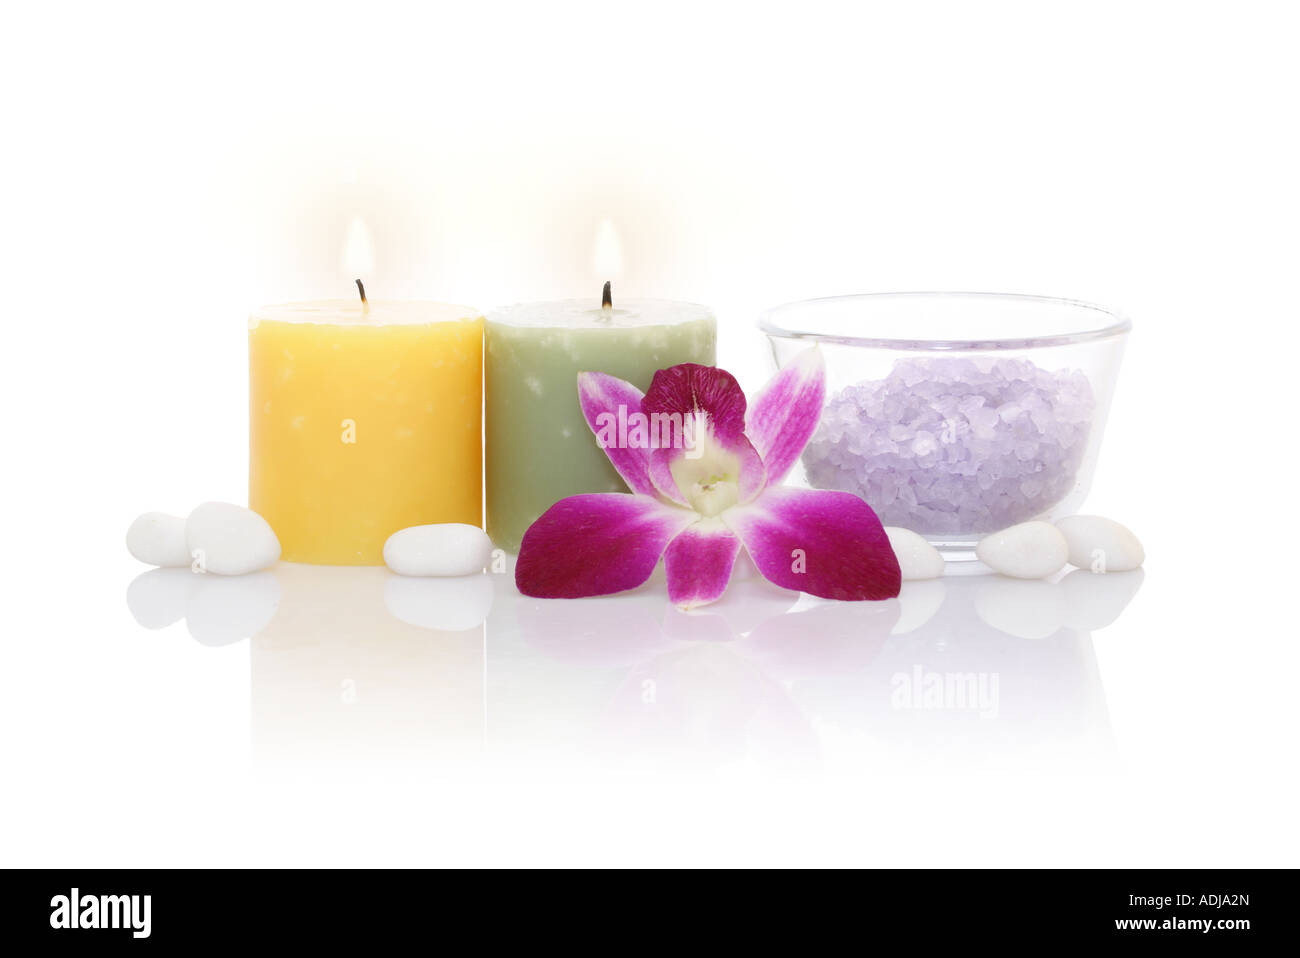 Bougies aromatiques, sels de bain et Orchid avec réflexion sur fond blanc Banque D'Images